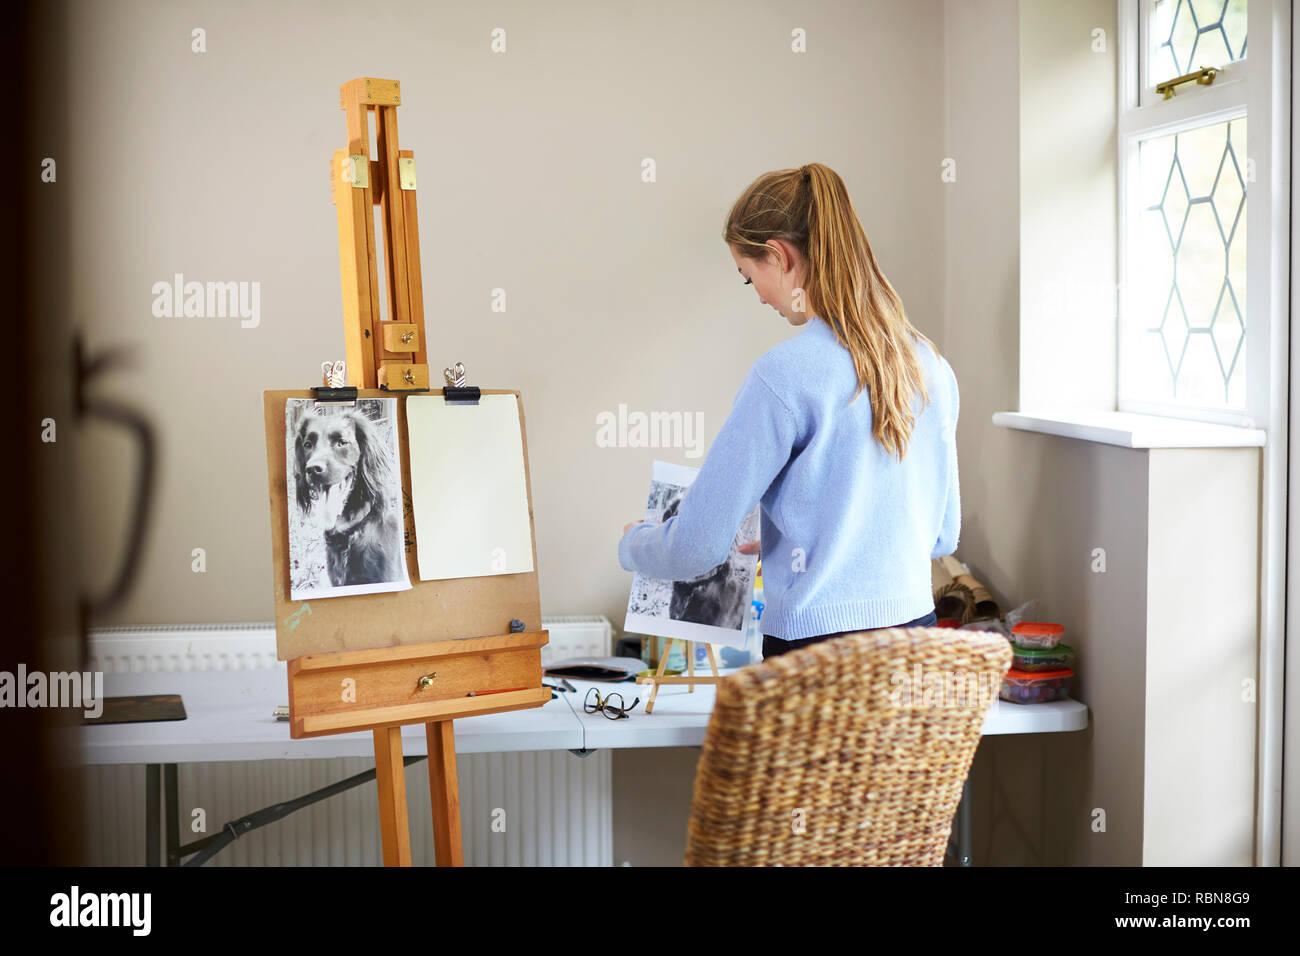 Femme artiste d'Adolescent La préparation d'appeler photo de chien à partir de photographie Banque D'Images